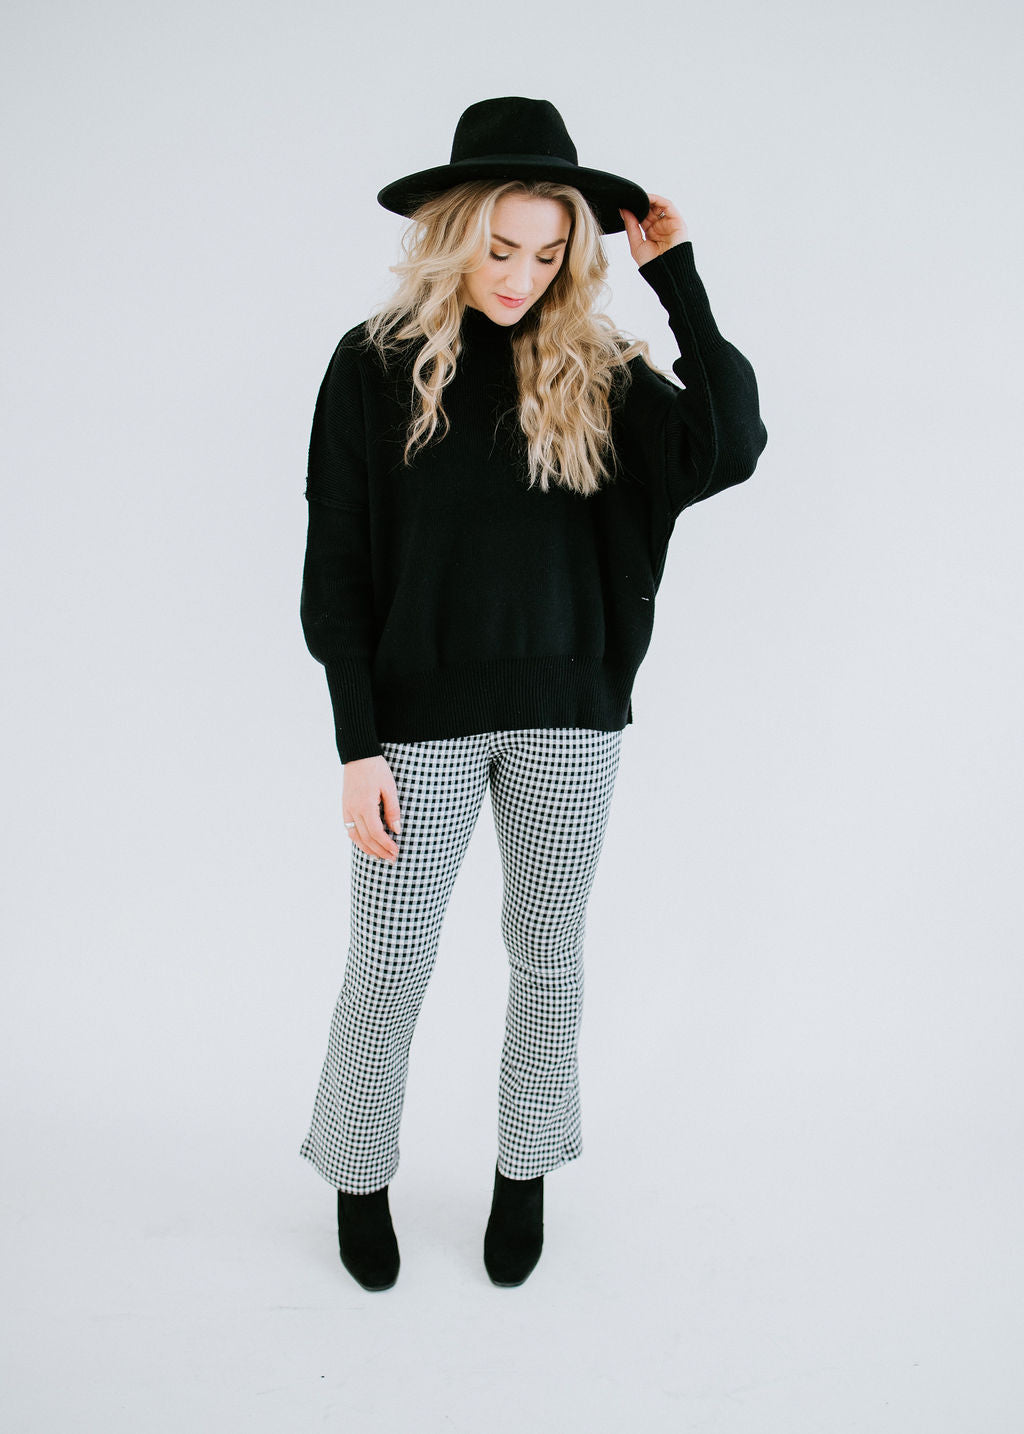 Roslyn Mock Neck Sweater by Chelsea DeBoer